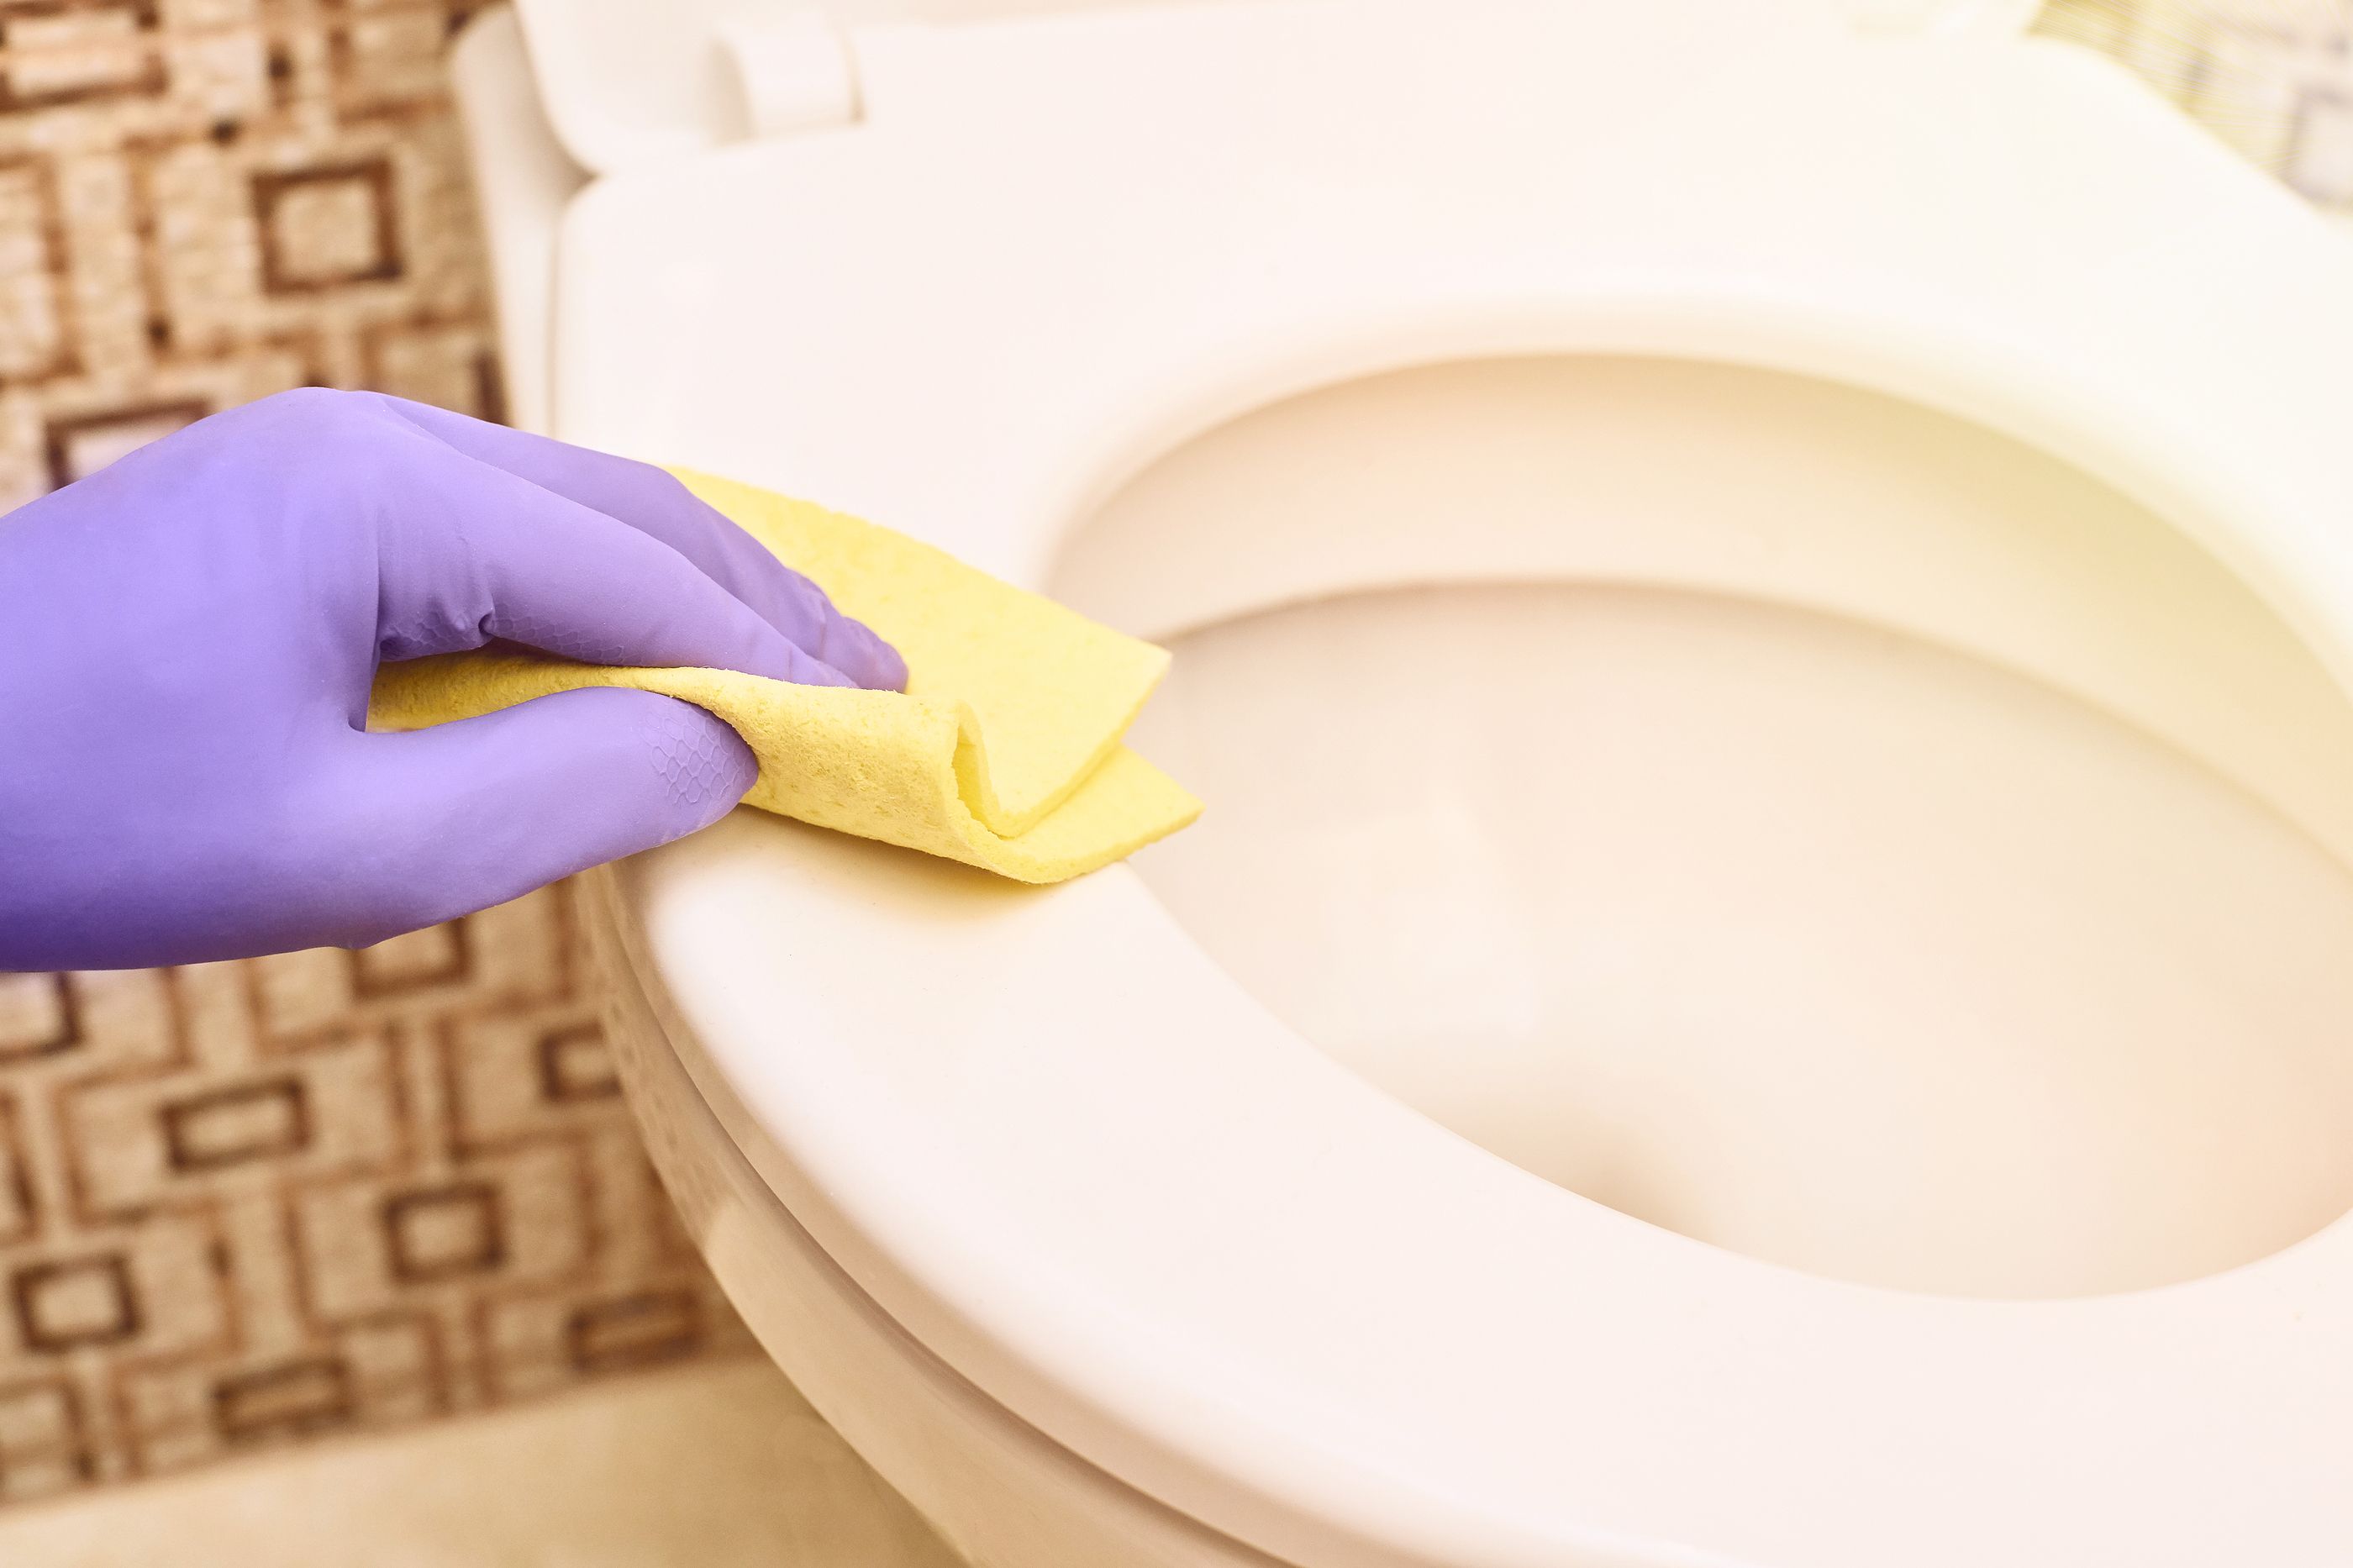 Los 10 mejores productos para la limpieza completa de baños